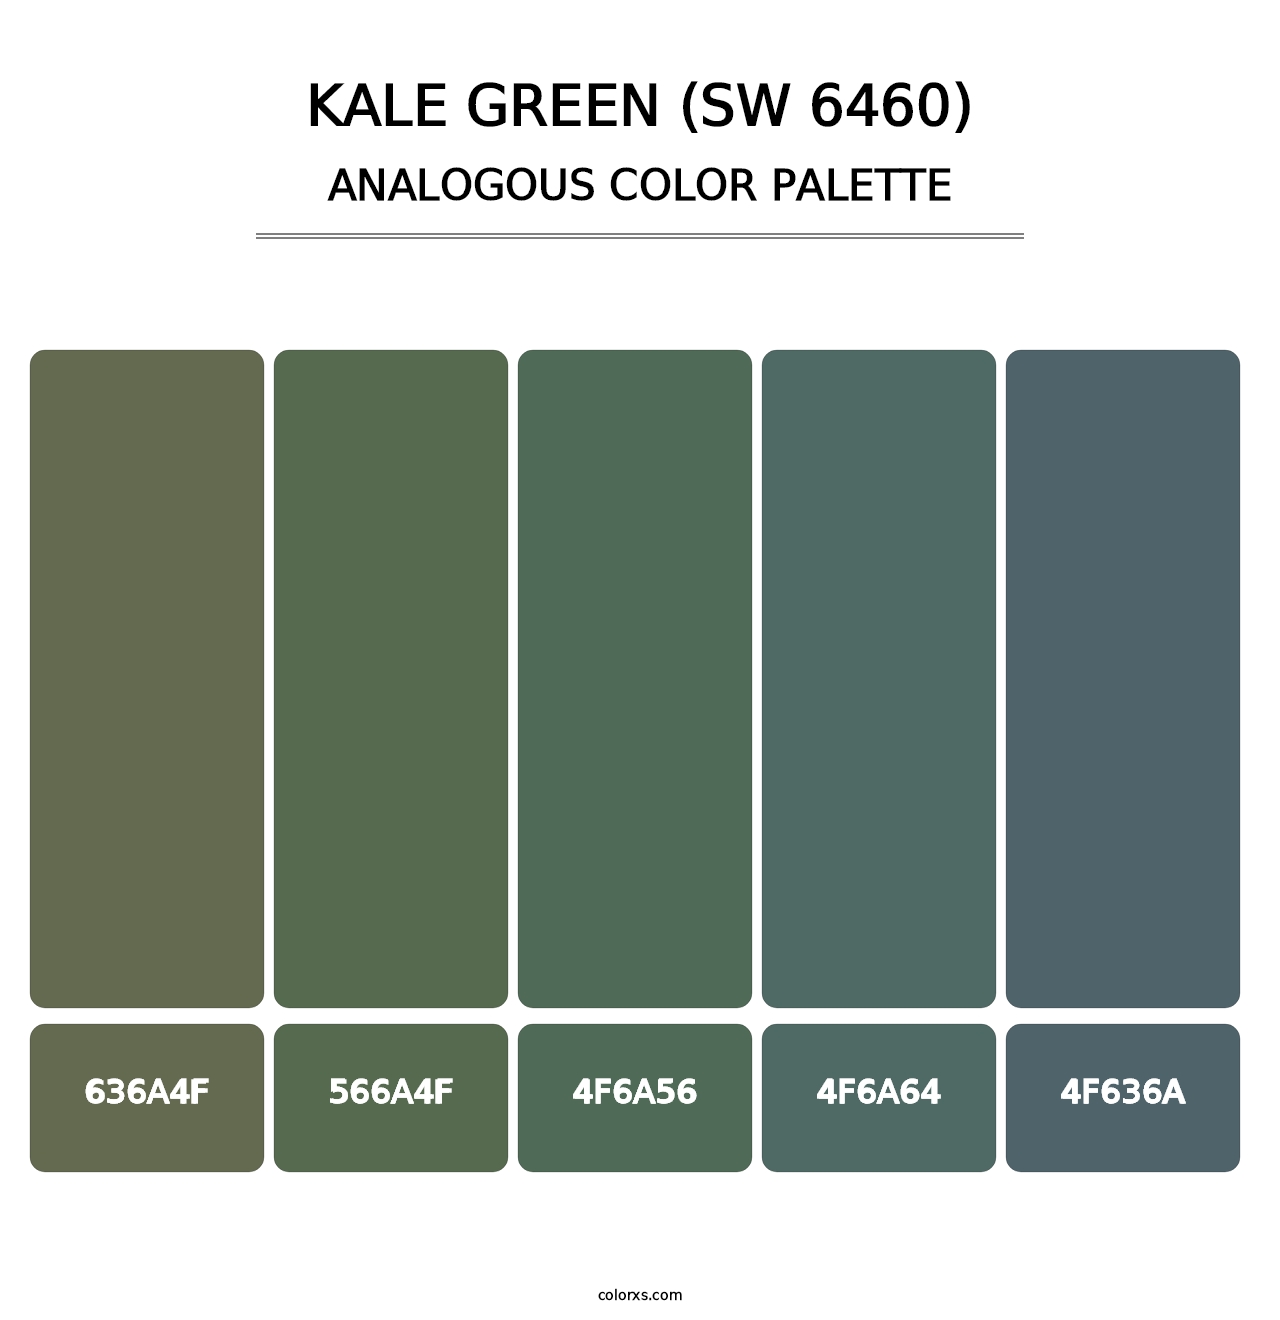 Kale Green (SW 6460) - Analogous Color Palette